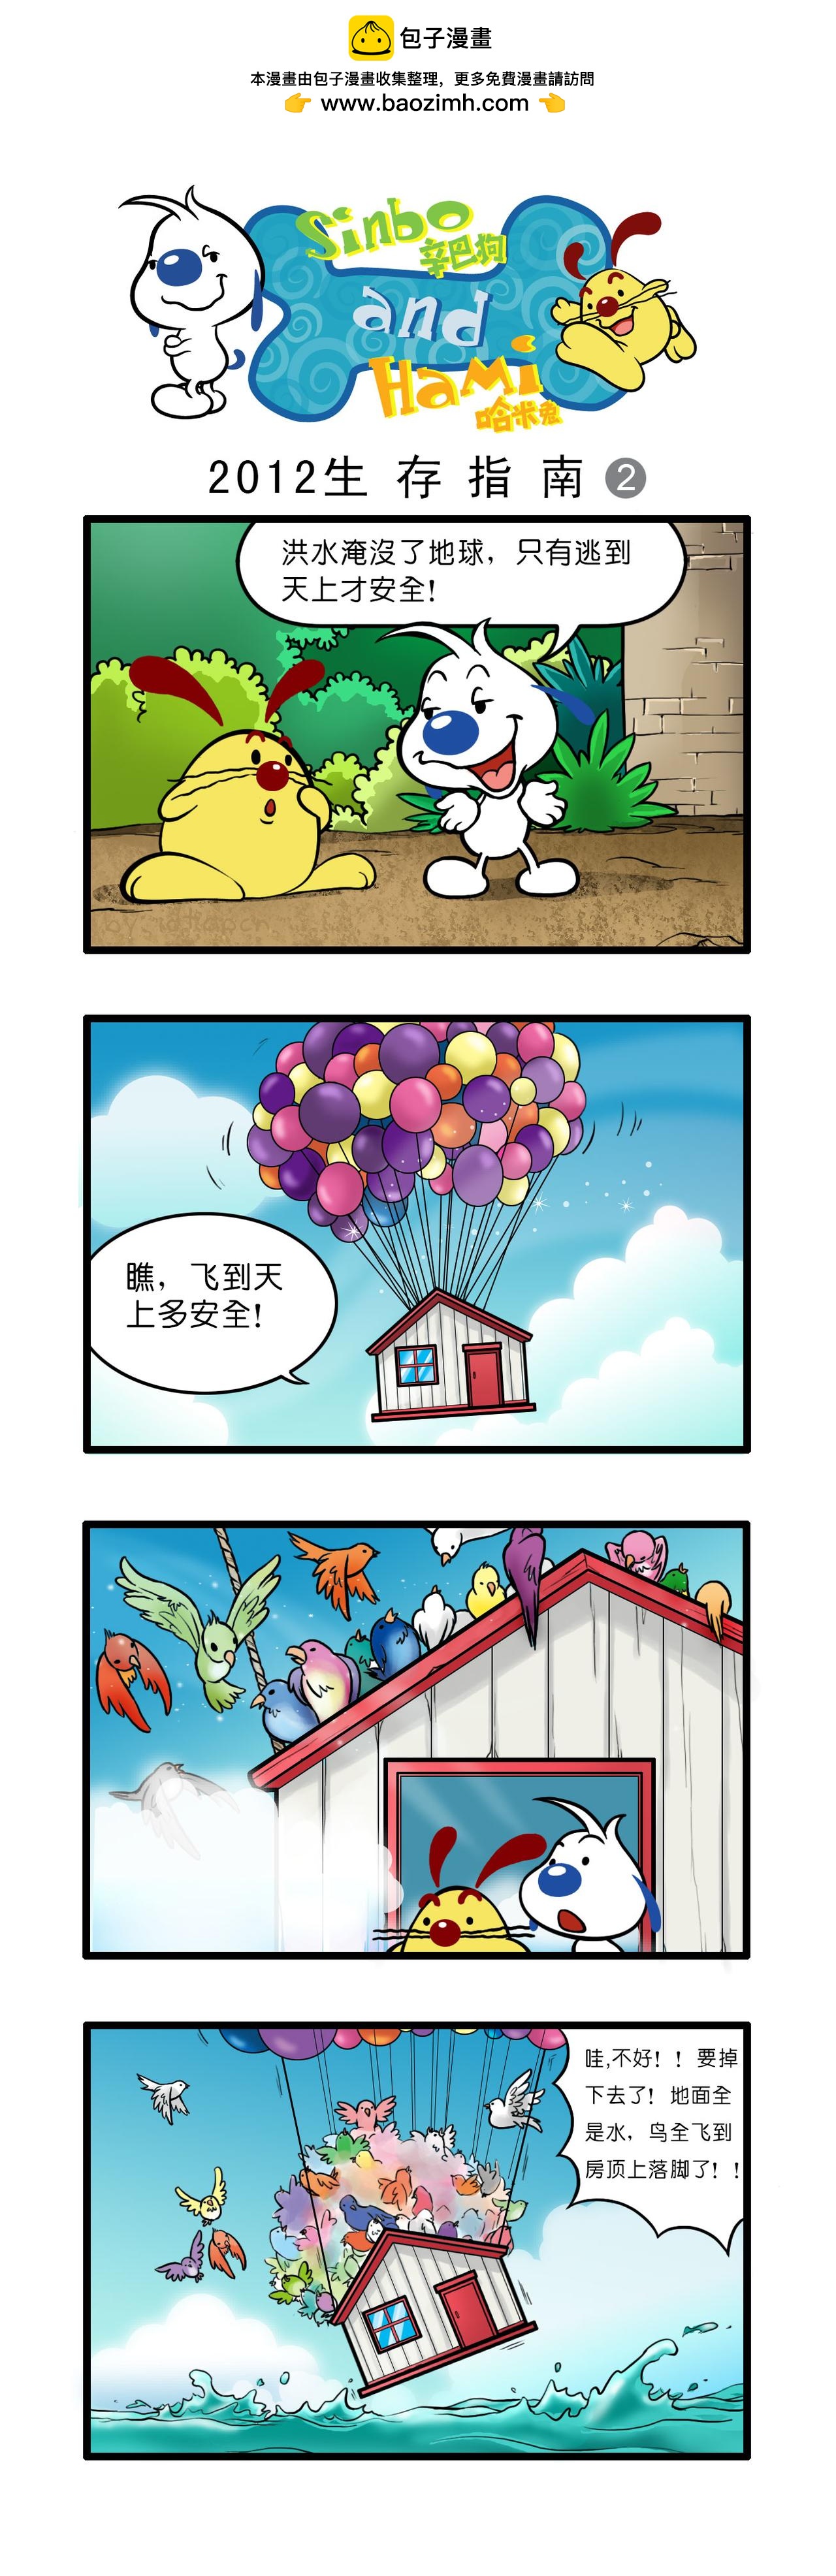 辛巴狗日常漫畫 - 多格21 - 1